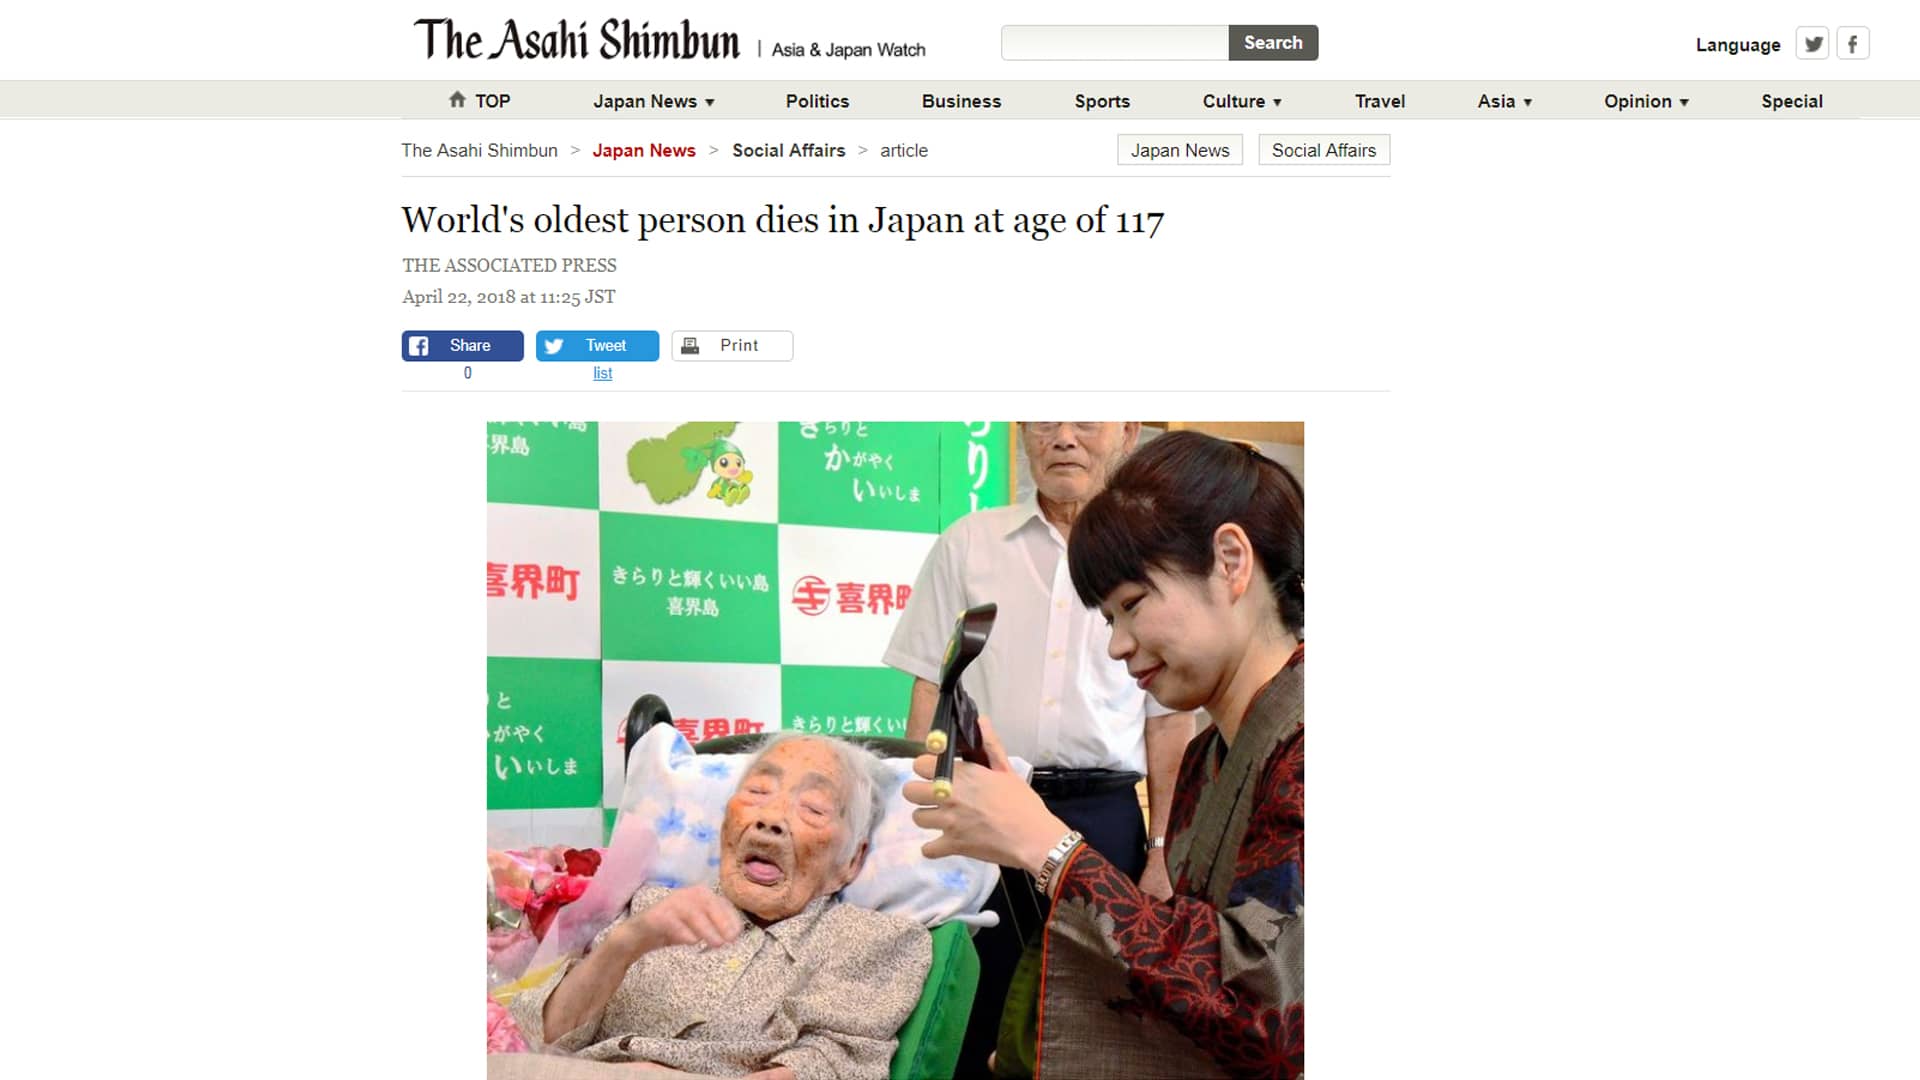 Kuvakaappaus The Asahi Shimbun- uutissivustolta aiheesta, joka koskee Nabi Tajiman kuolemaa 117 vuoden iässä.